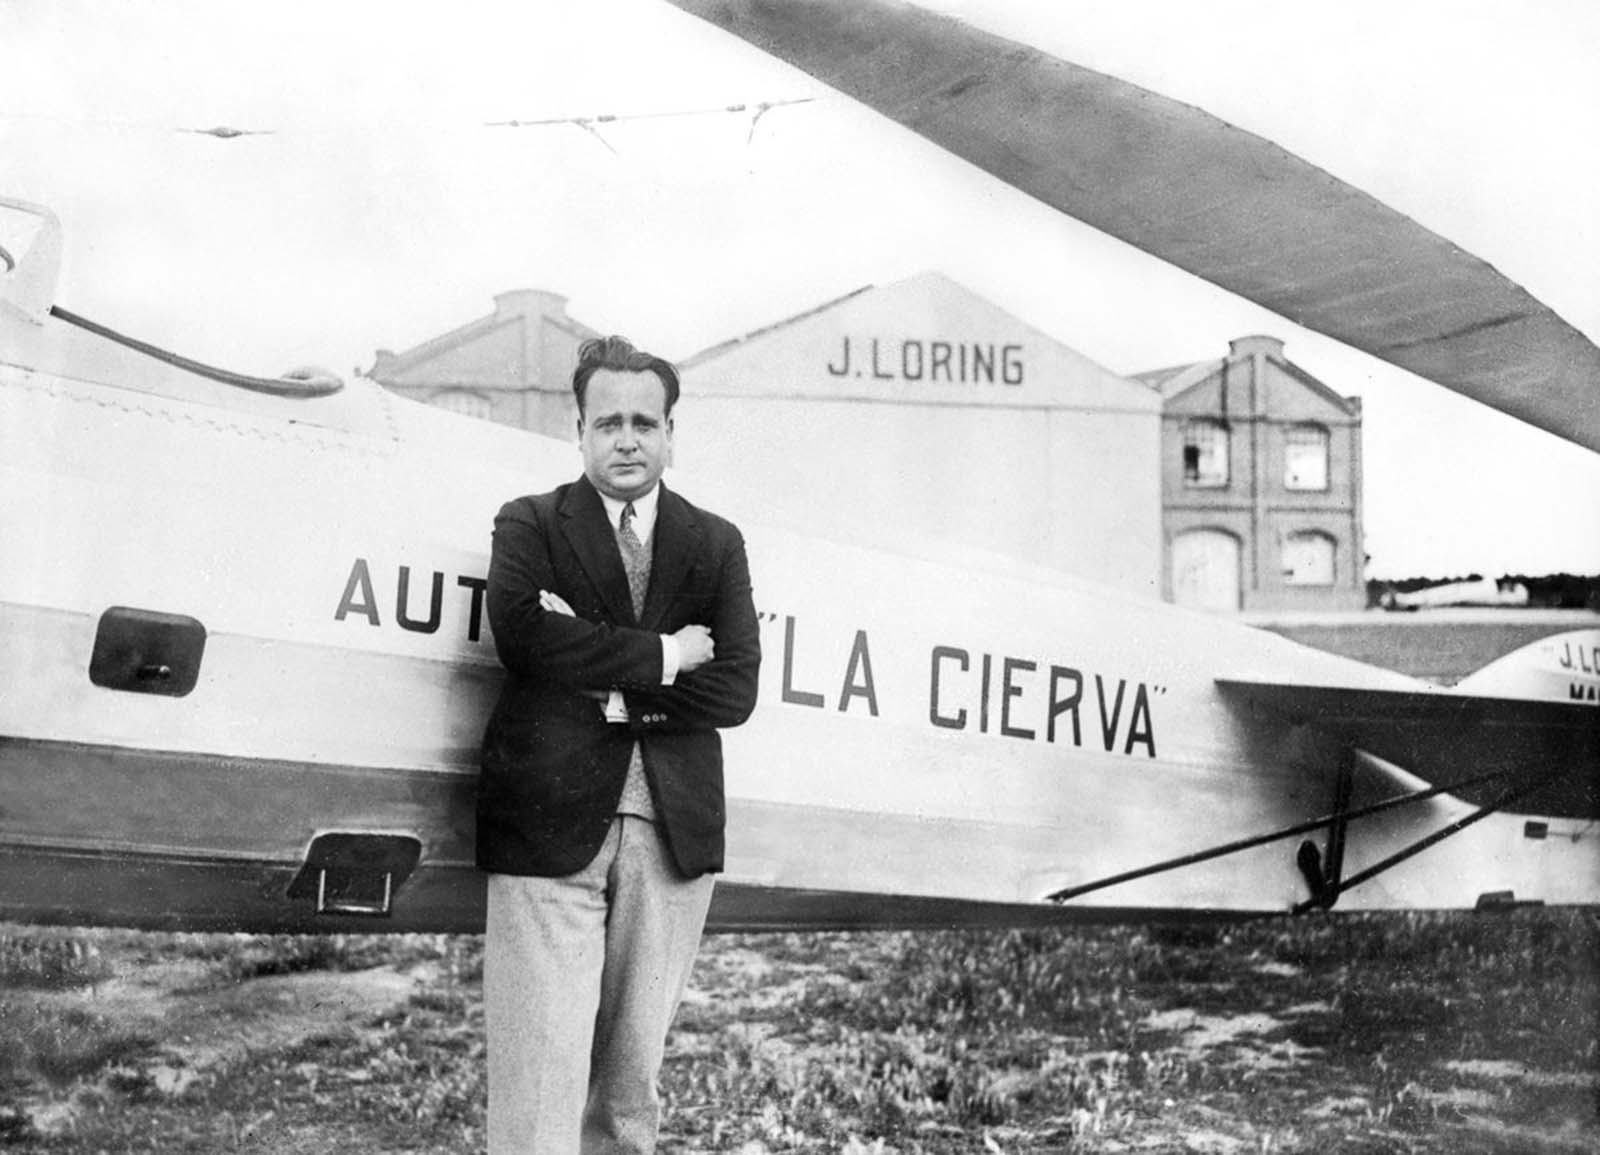 Autogyro: L'histoire des premiers hybrides avion-hélicoptère, 1925-1940